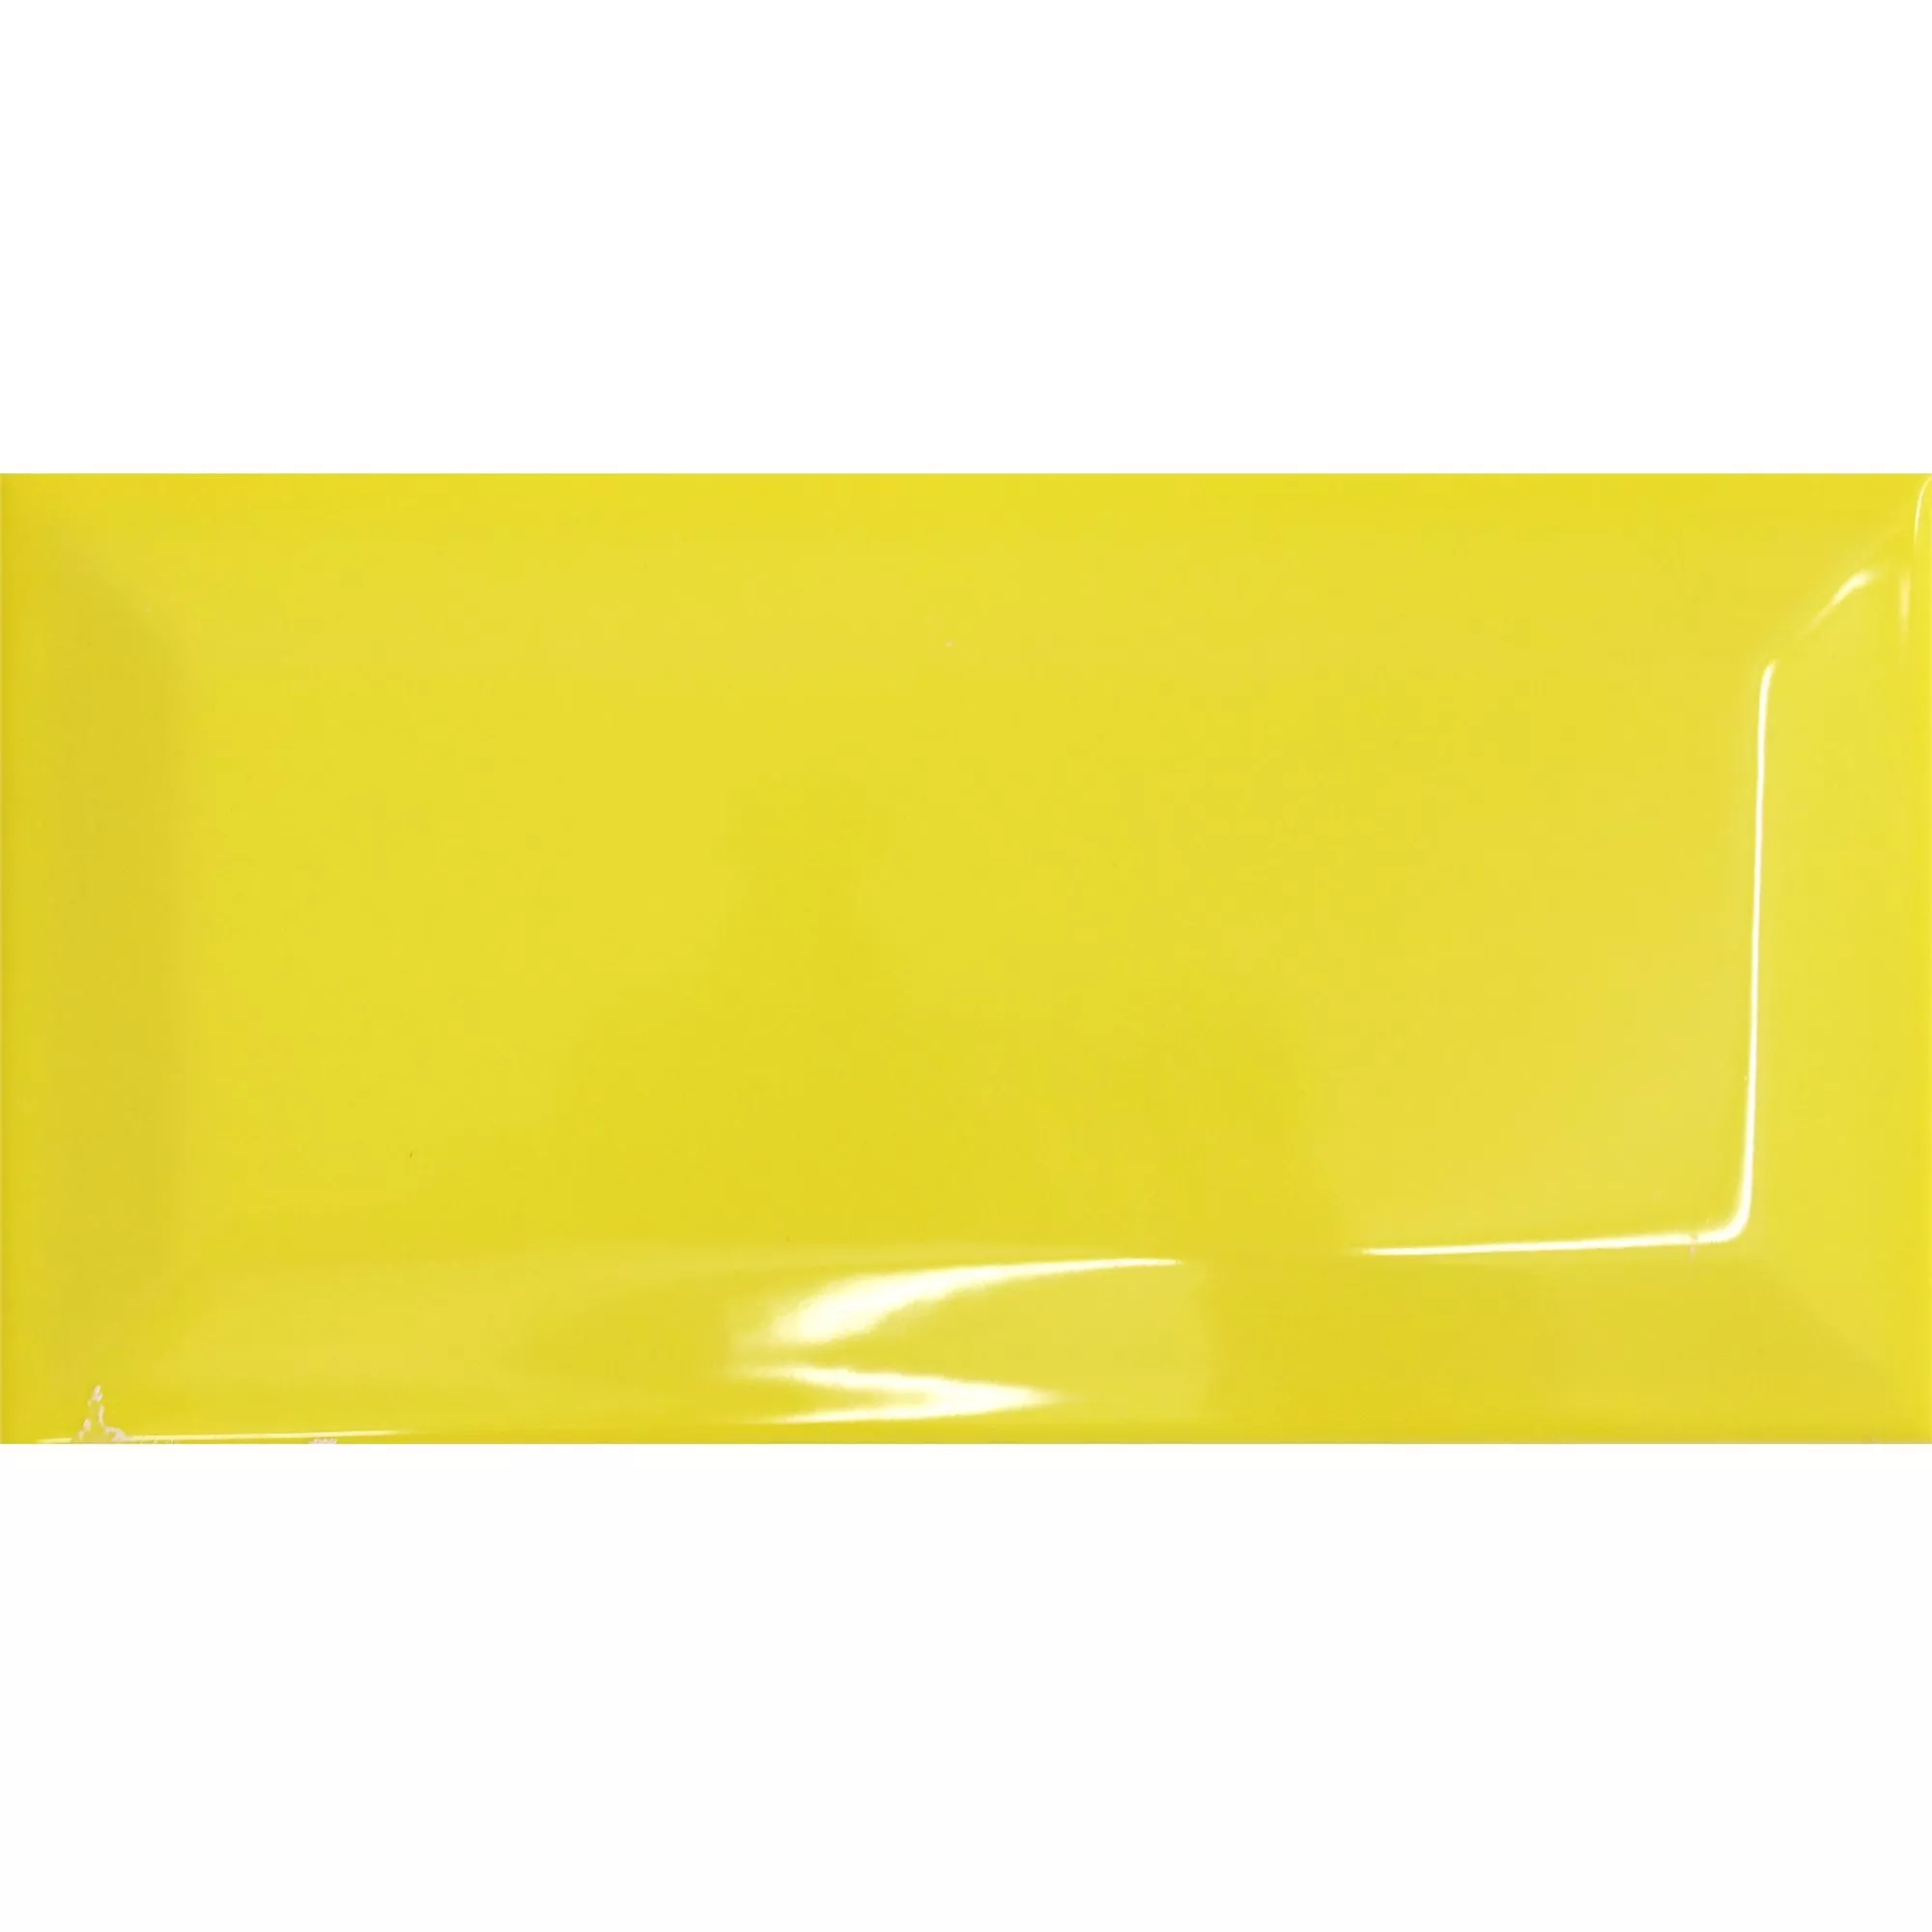 Sample Metro Wandtegels Colombo Yellow 10x20cm